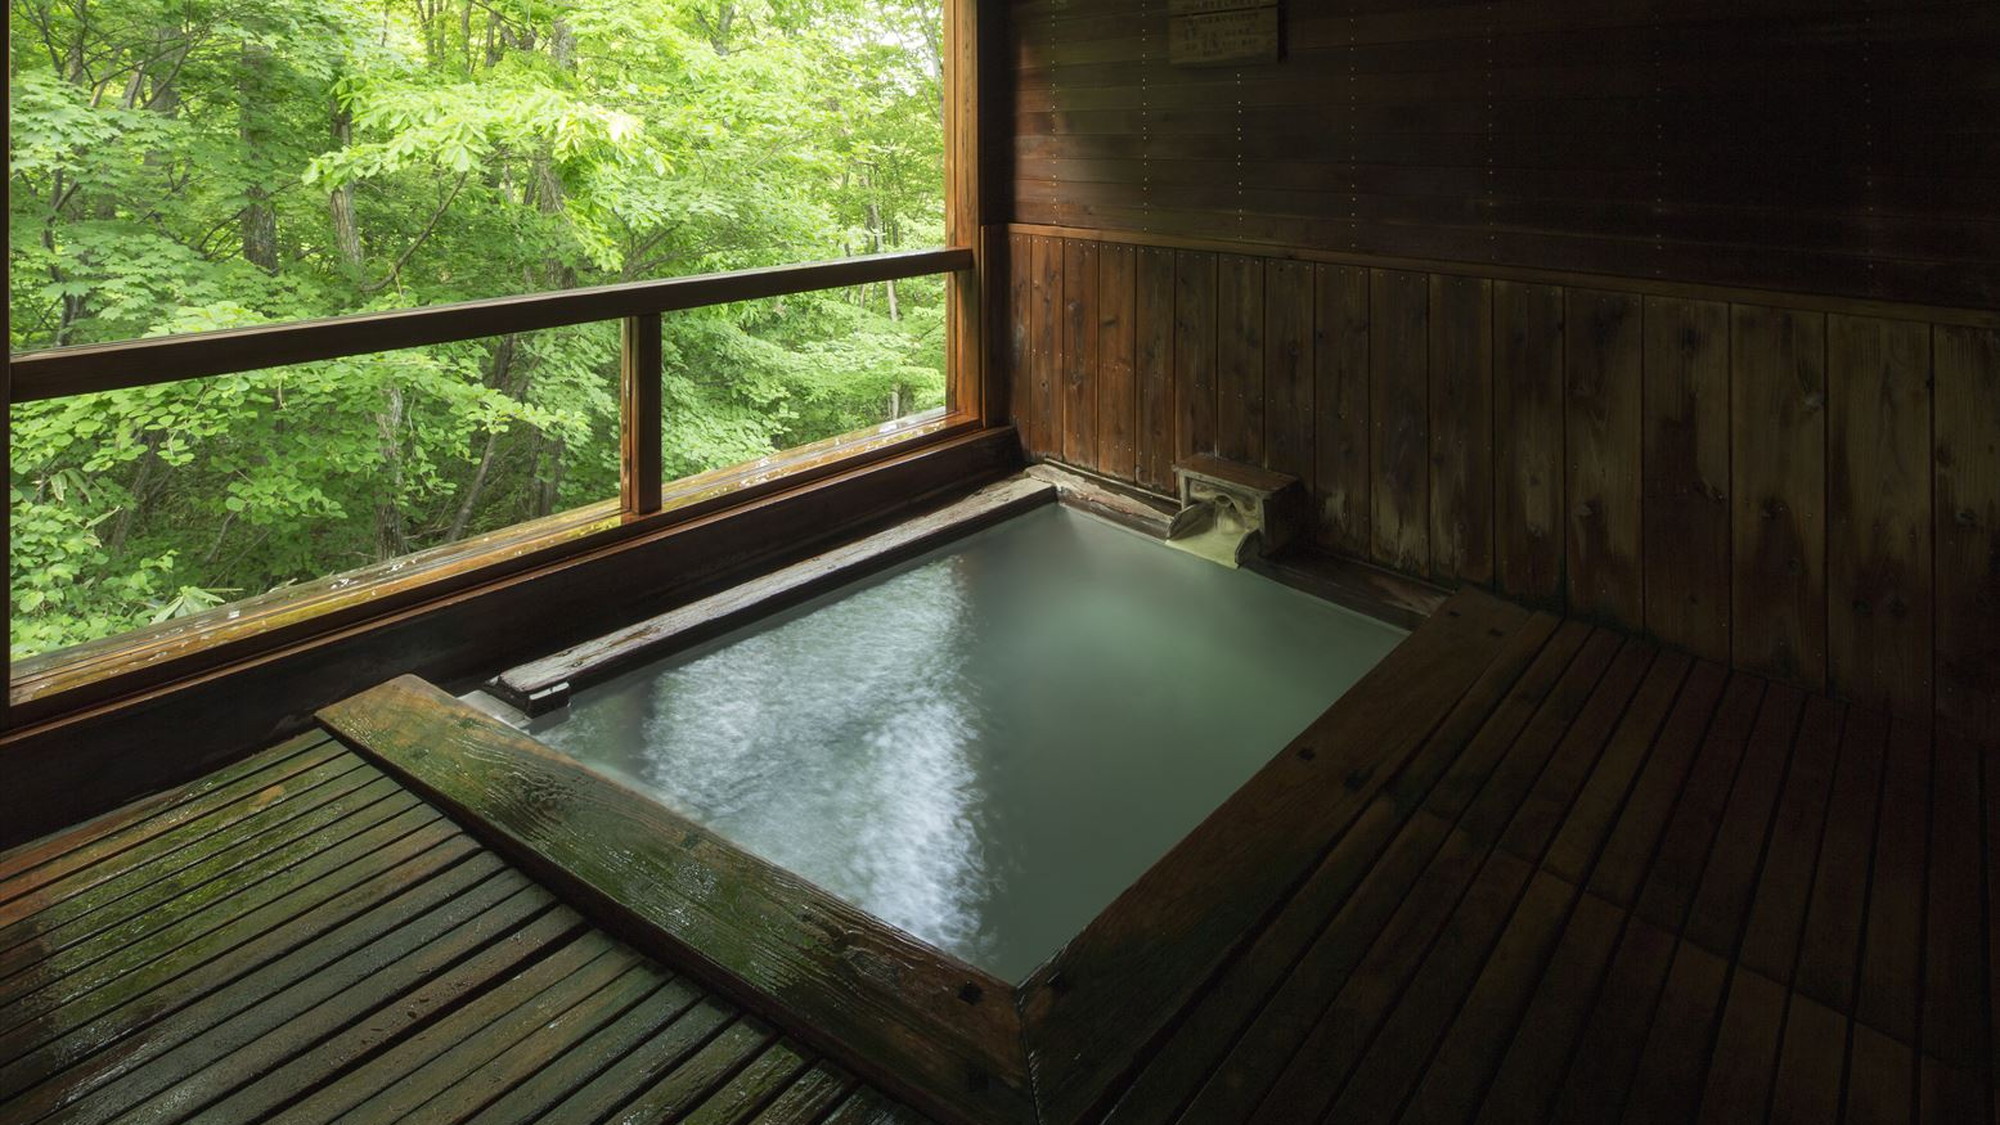 【ホテル樹林】蔵王温泉を楽しむ露天風呂付き大浴場や、アルカリ性の人工温泉の浴場など